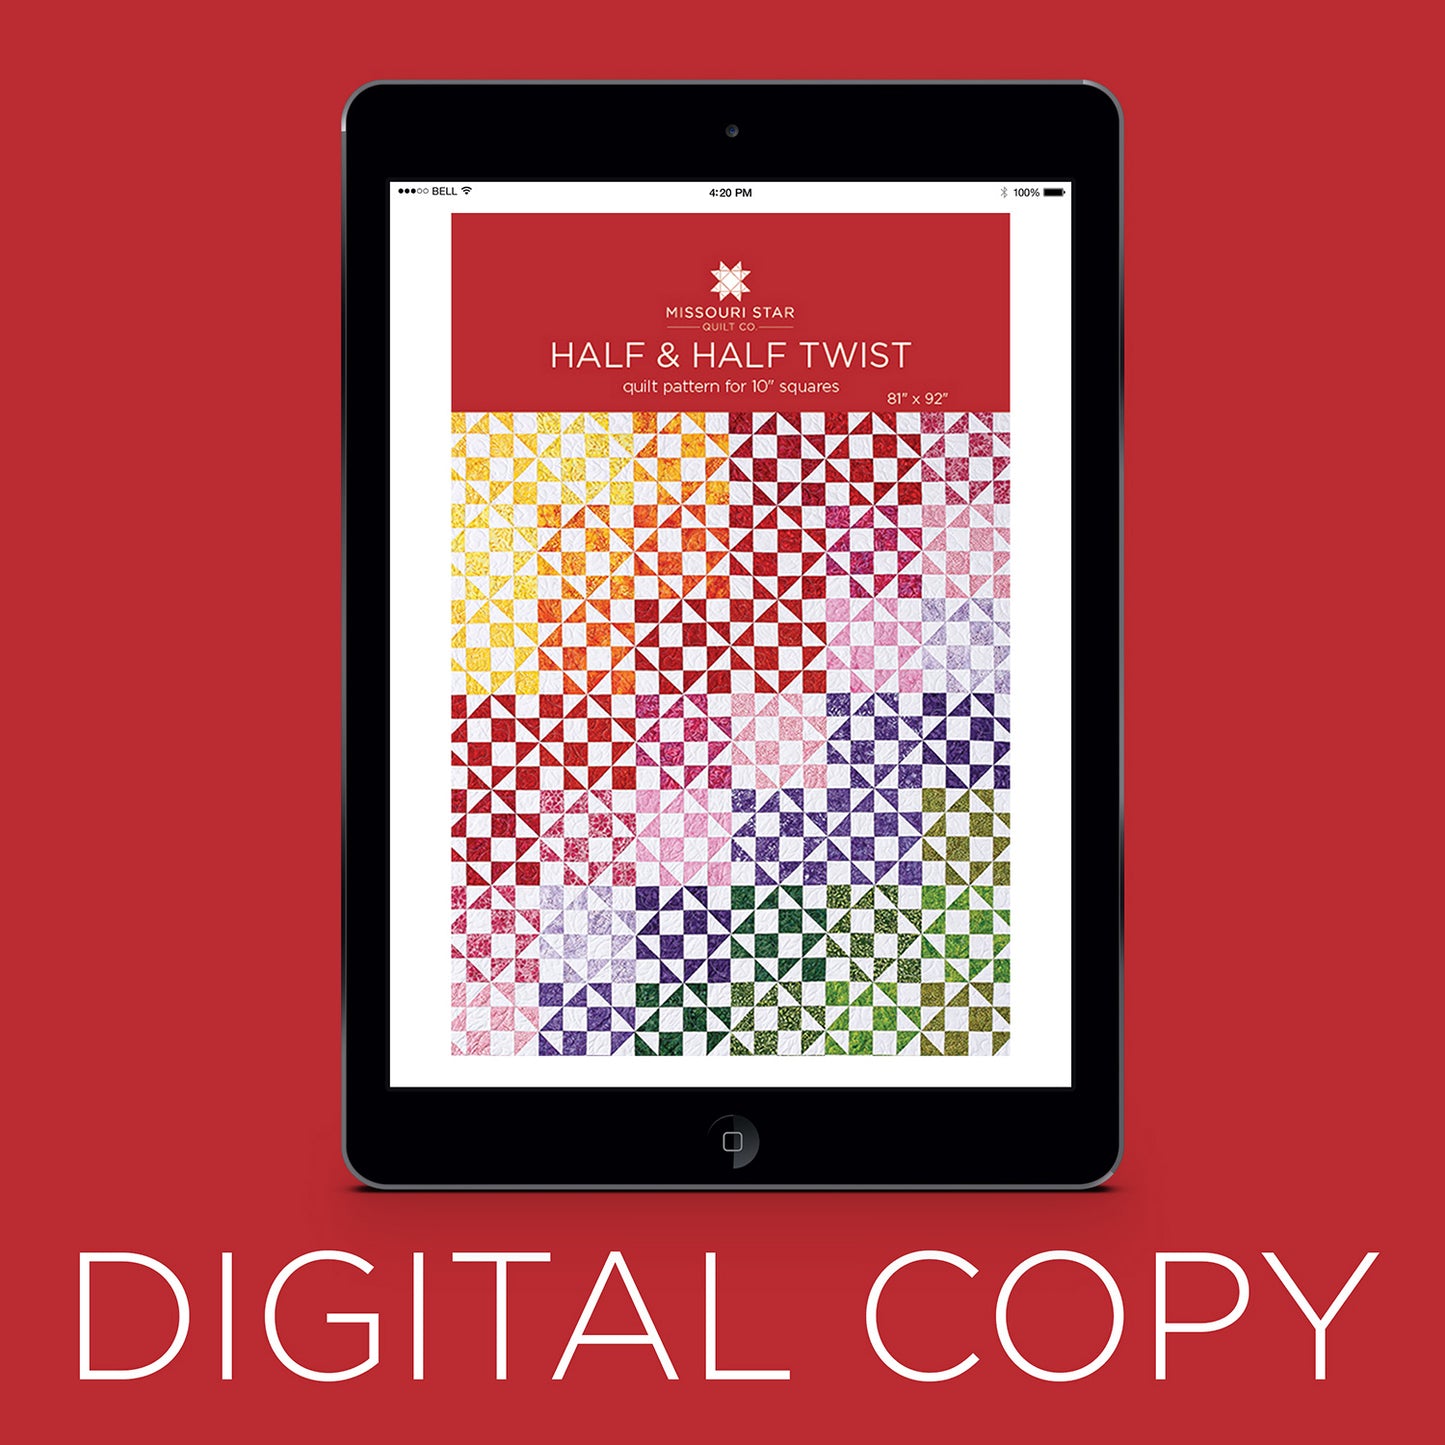 Digital Download - Half & Half Twist Quilt Pattern by Missouri Star Primary Image